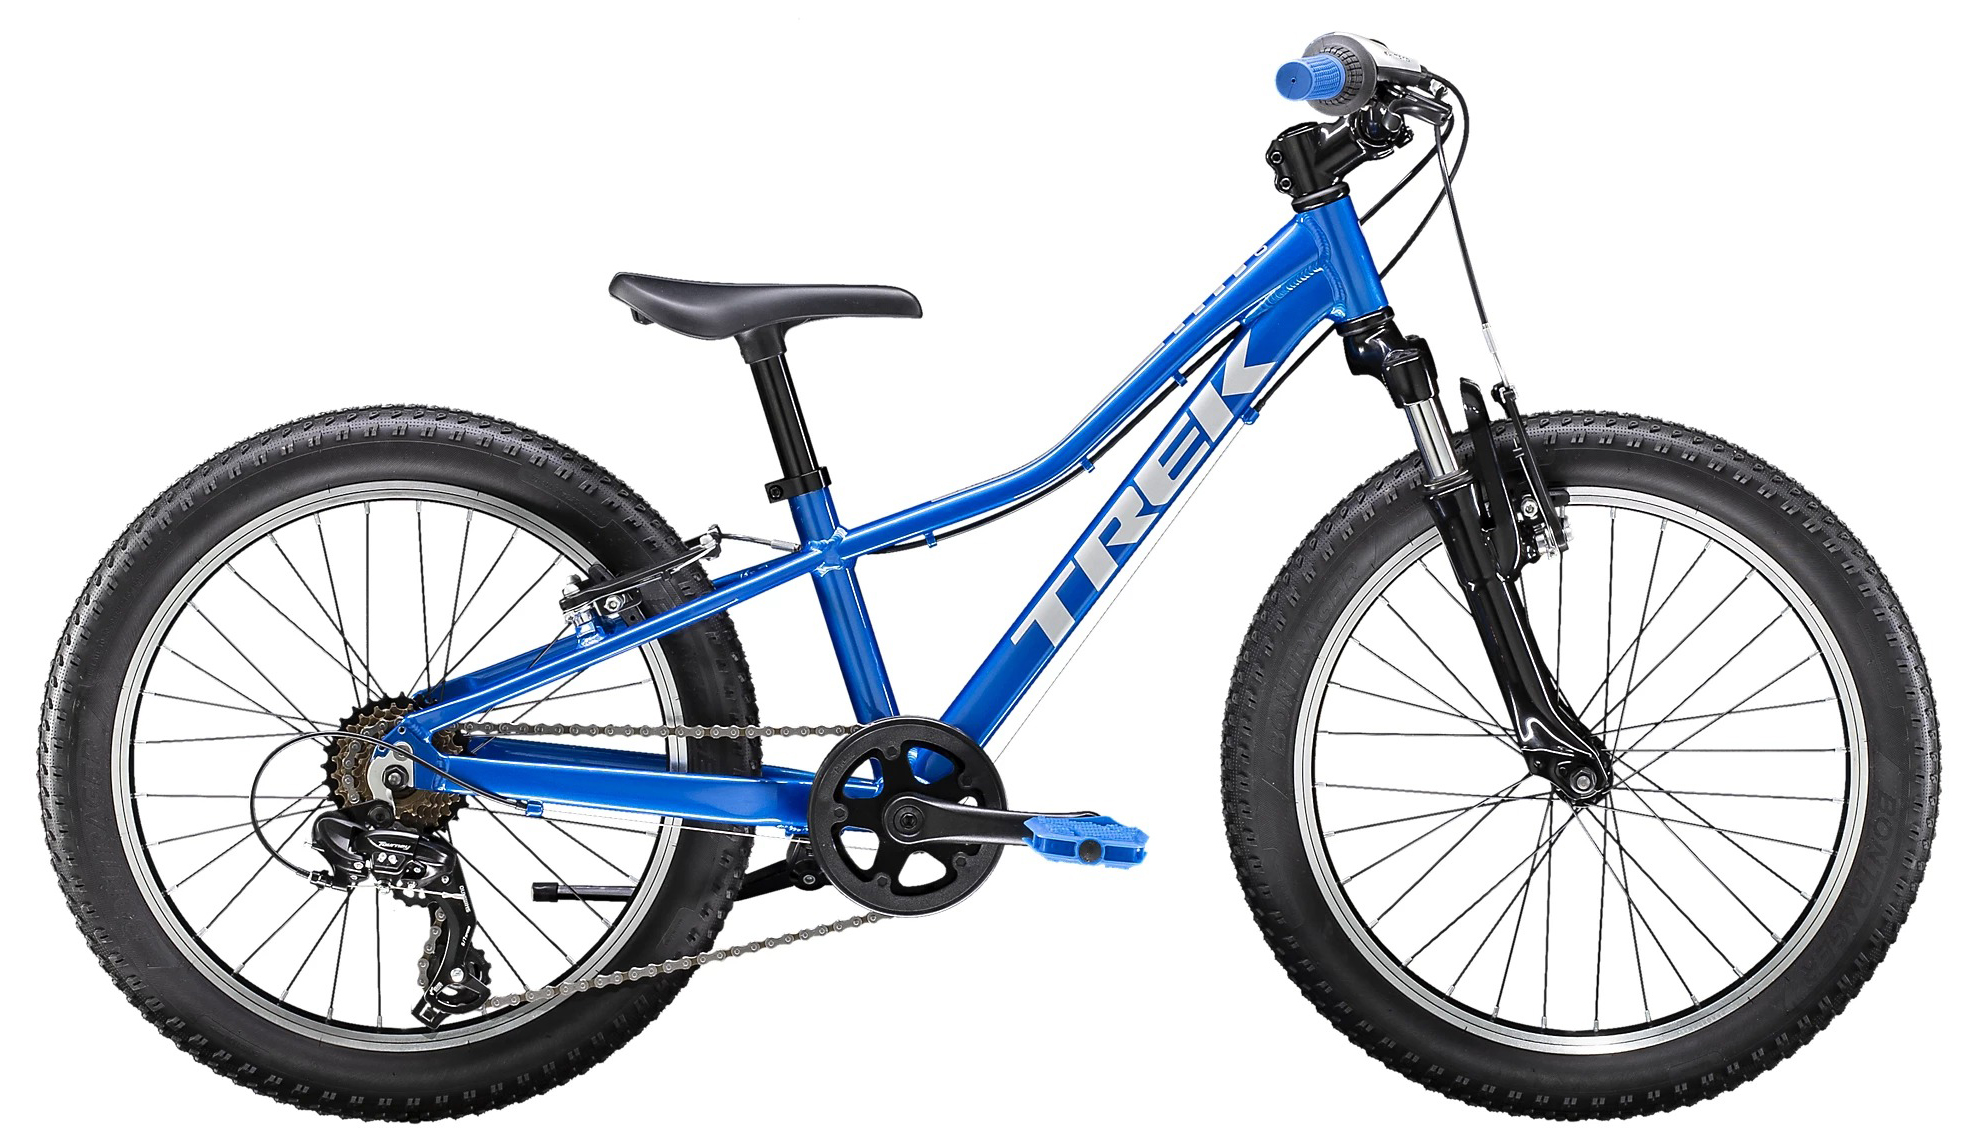  Отзывы о Детском велосипеде Trek Precaliber 20 7Sp Boys 2022